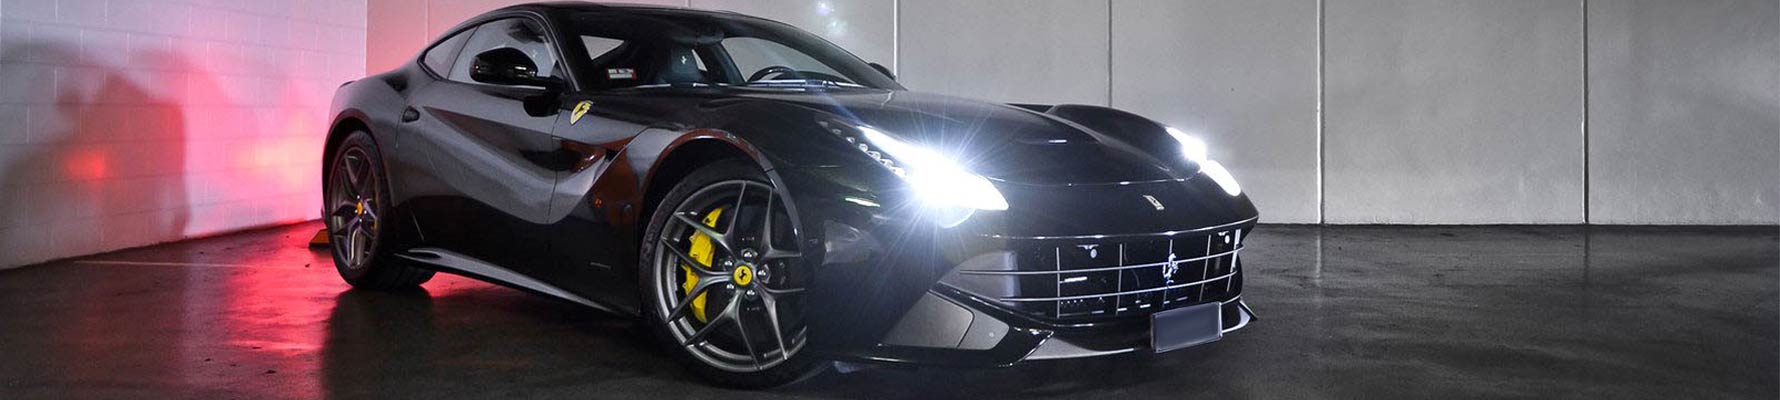 Ferrari nera con luci xenon bianche potenti, i migliori accessori auto su Qualityspcars